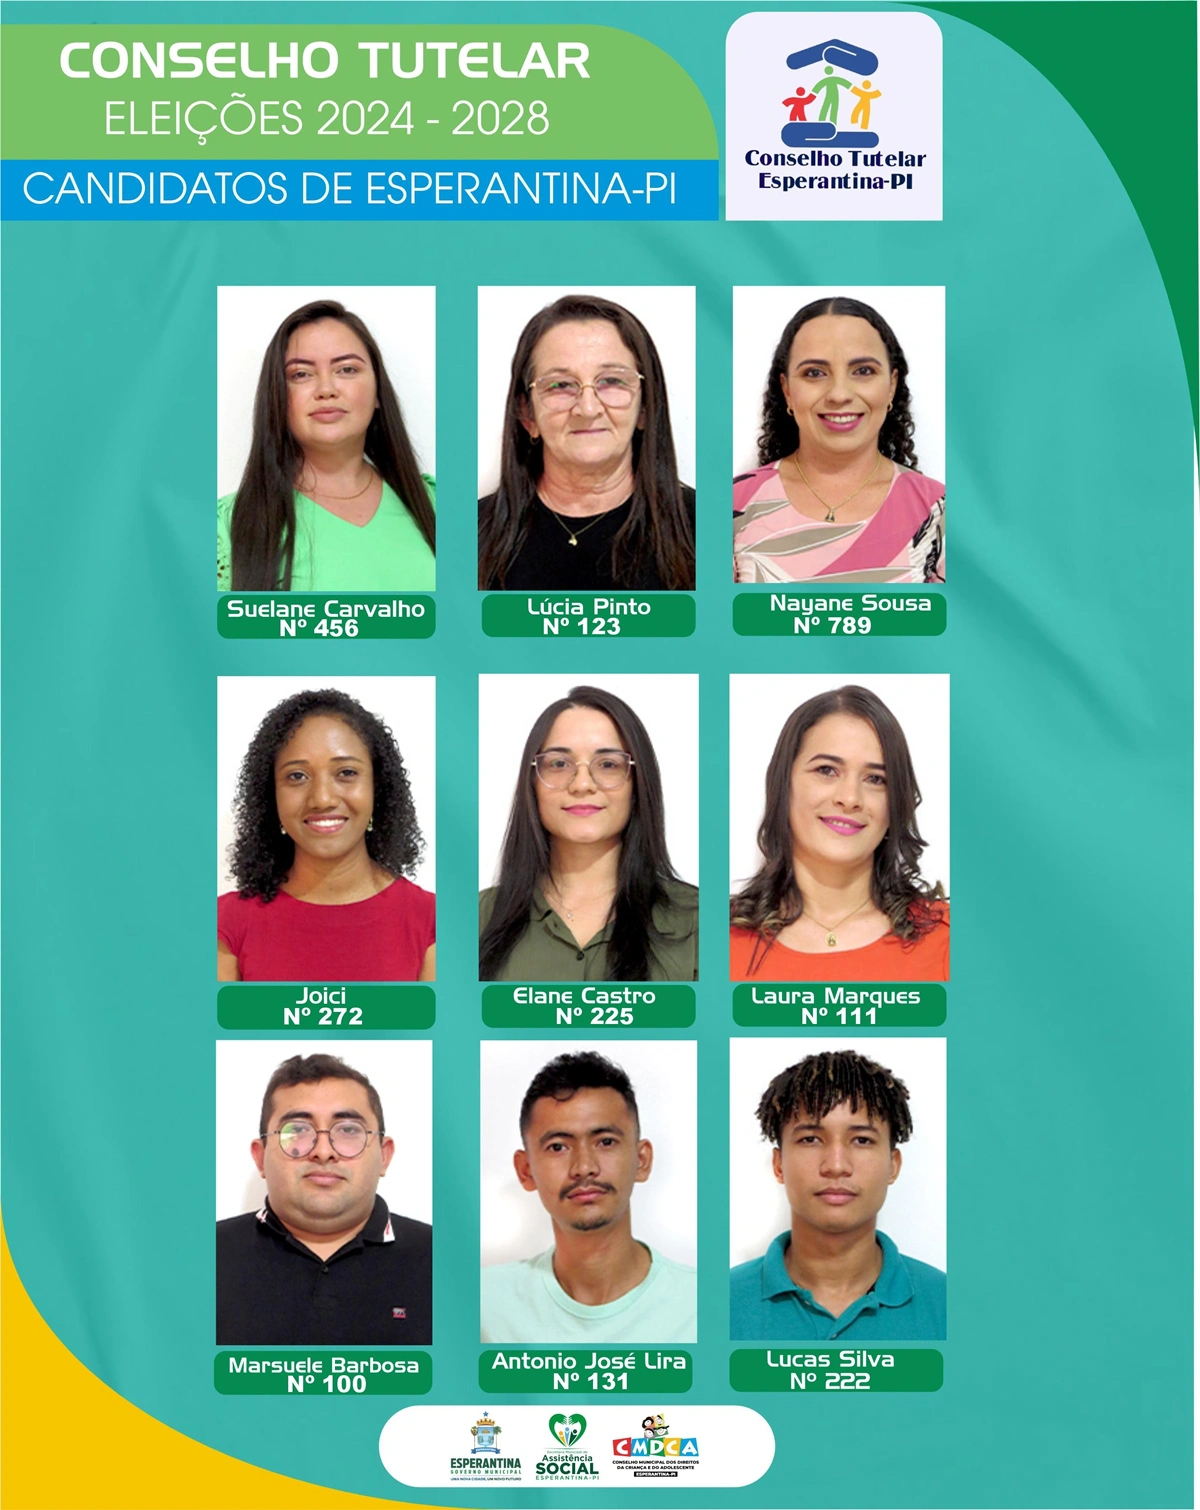 Conheça os candidatos que disputam as vagas para o Conselho Tutelar em Esperantina